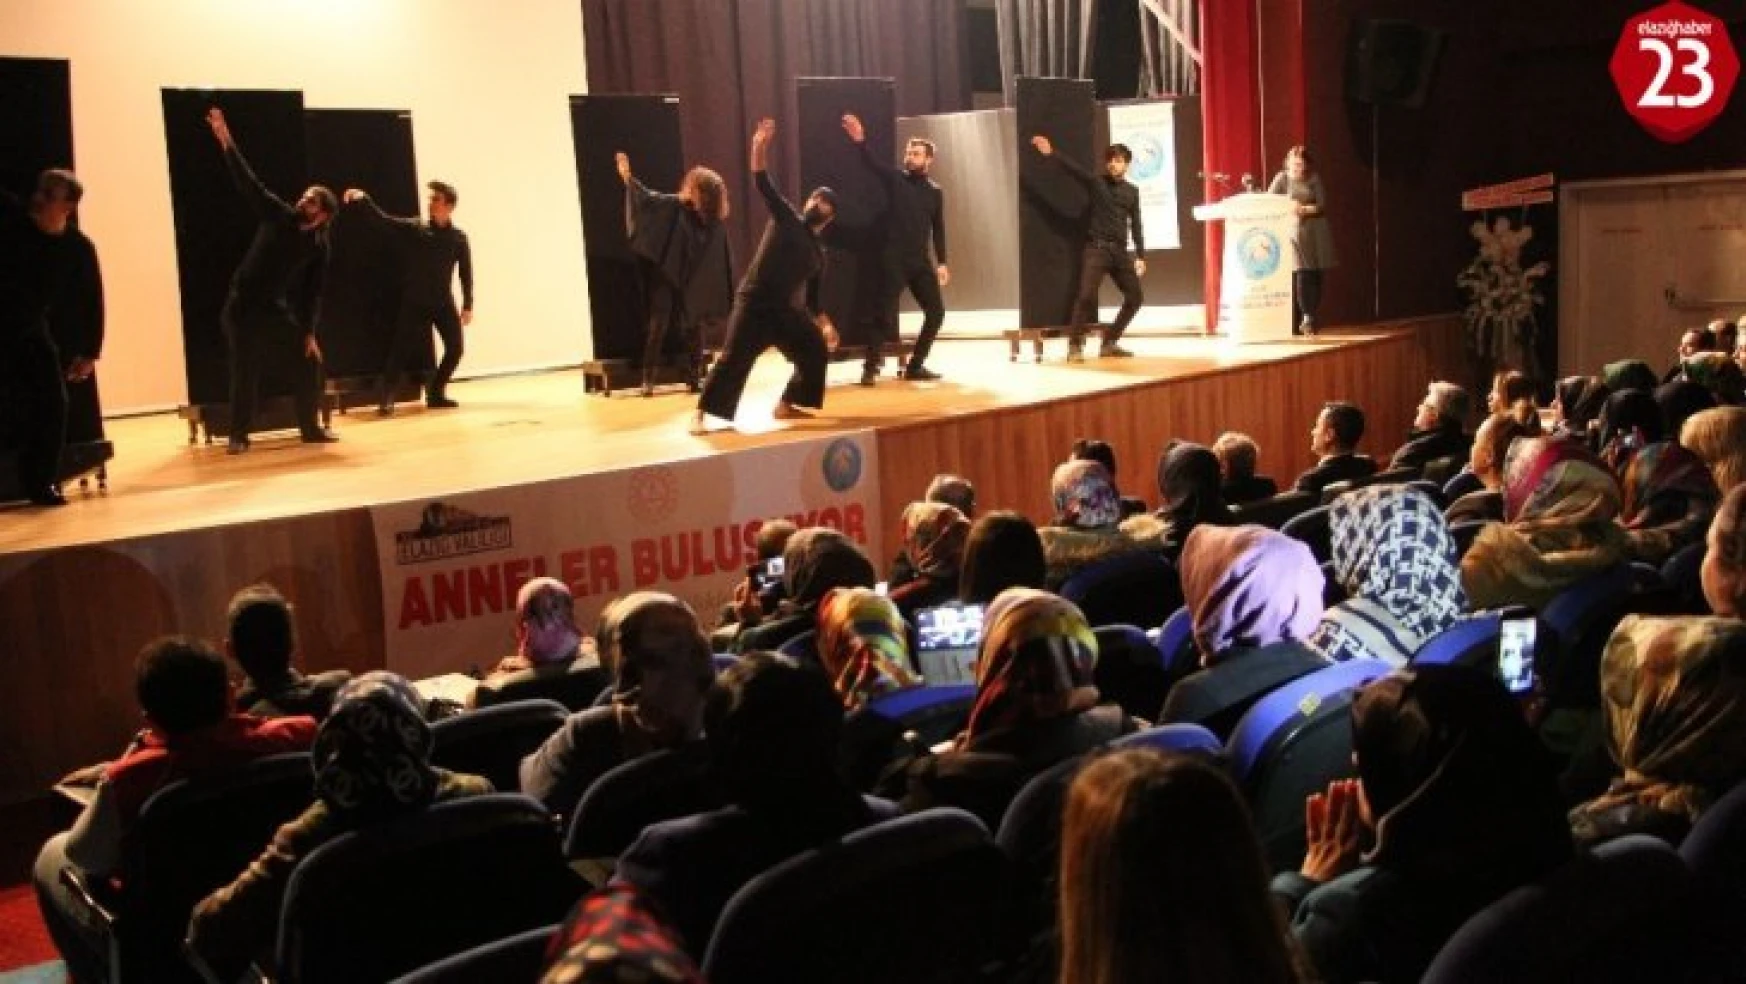 Elazığ'da 'Anneler Buluşuyor' etkinliği